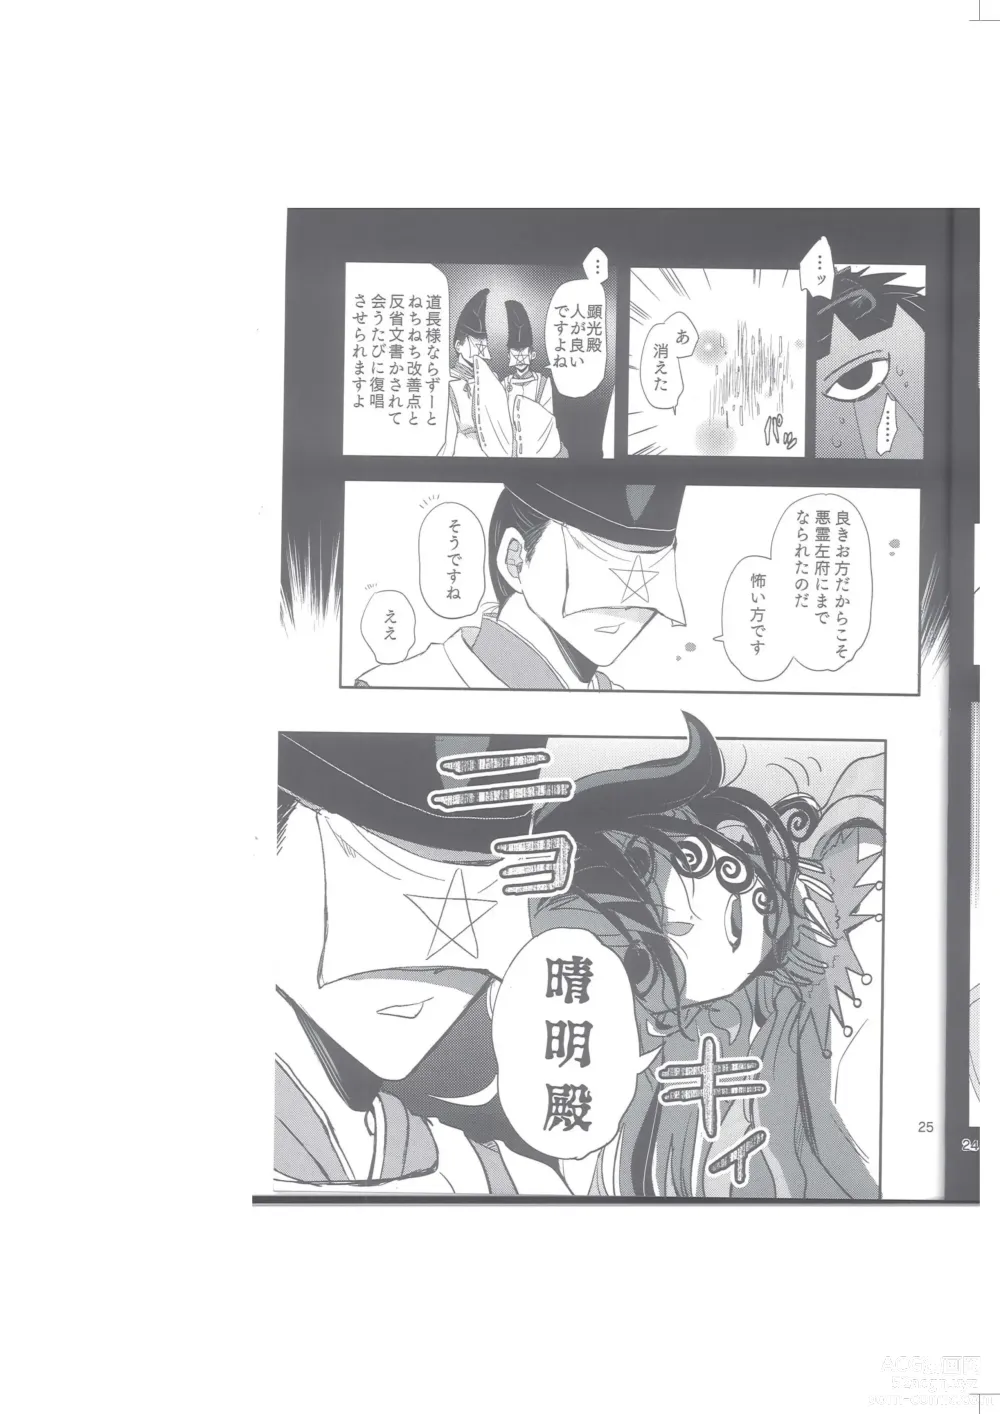 Page 26 of doujinshi Seimei Nounai  Kaigi